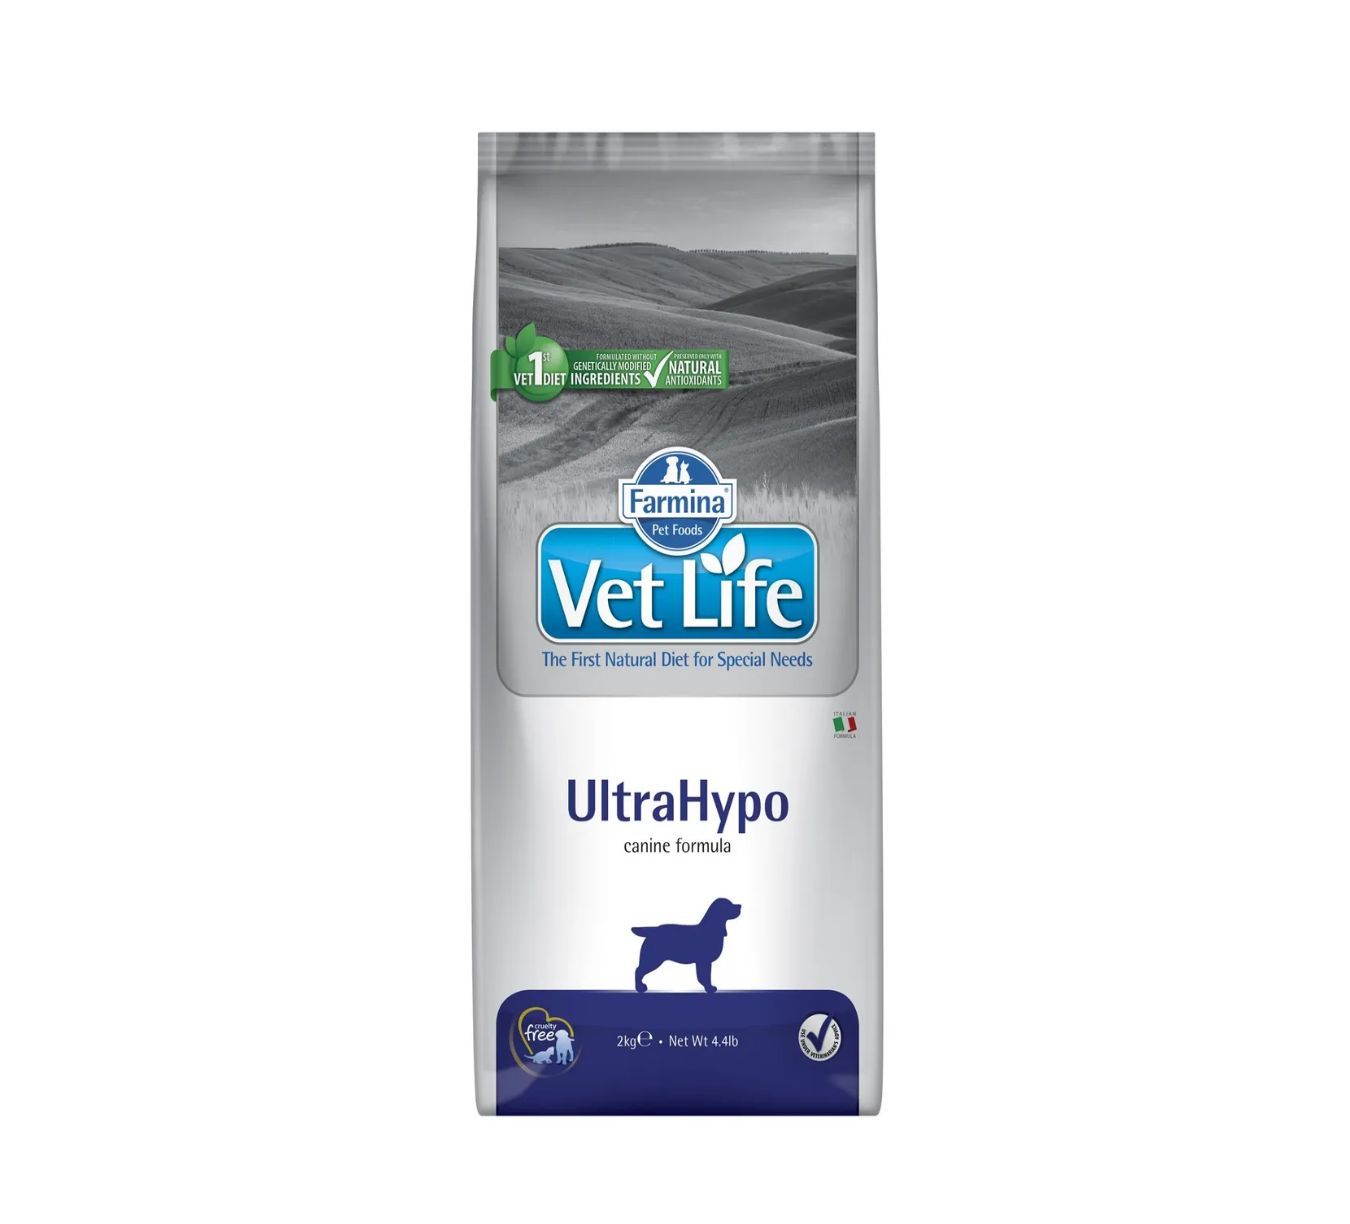 Корм для собак vet Life ULTRAHYPO. Farmina ULTRAHYPO для собак. Вит лайф для собак гипоаллергенный ультрагипо. Корм для собак VETLIFE ULTRAHYPO 2 кг как выглядит внутри.